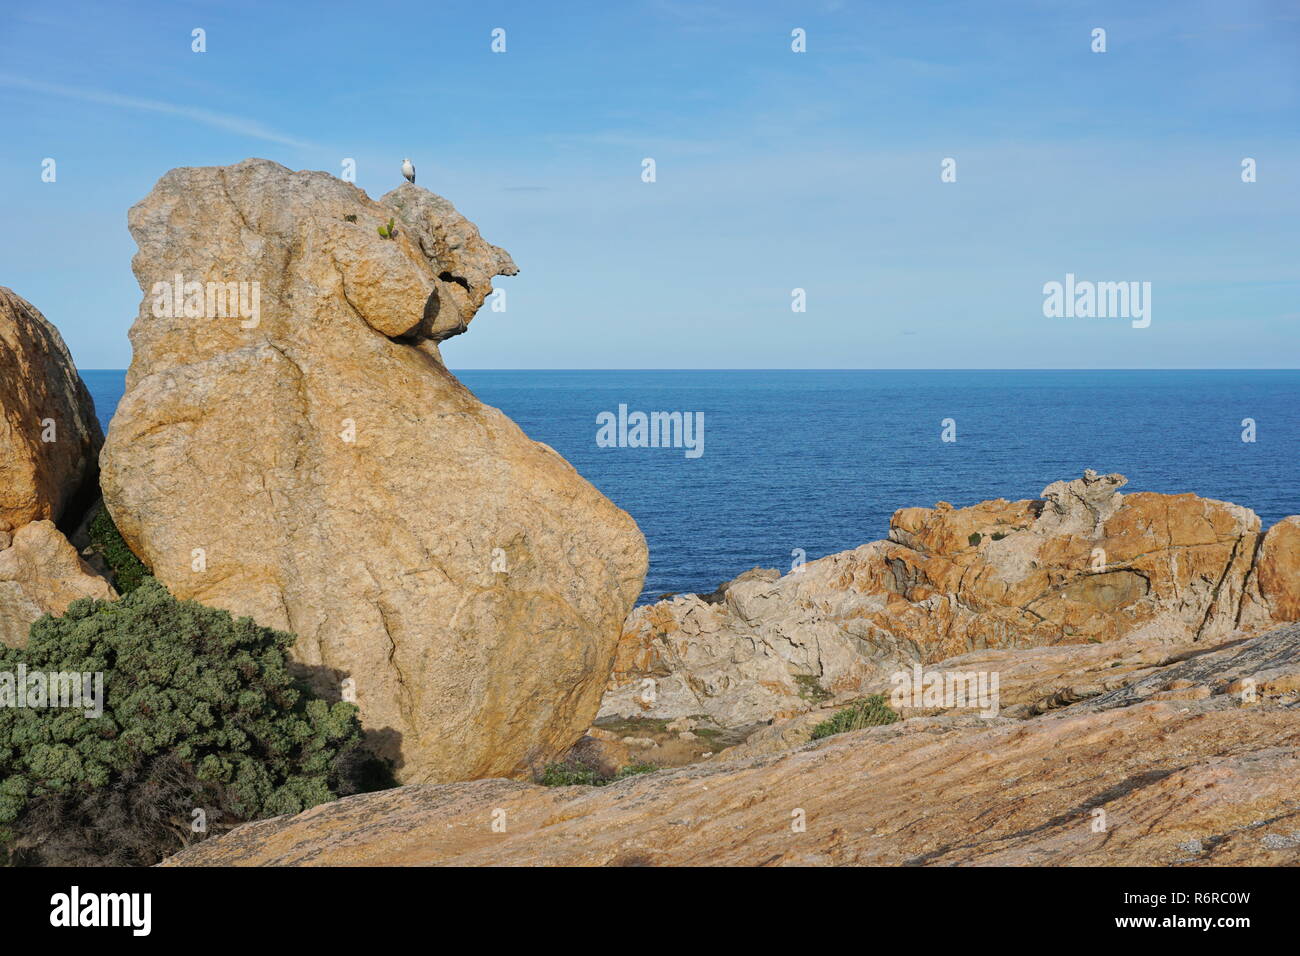 Rock formation with the Mediterranean sea in background, Cap de Creus natural park, El Camell del Pla de Tudela, Spain, Costa Brava, Catalonia Stock Photo